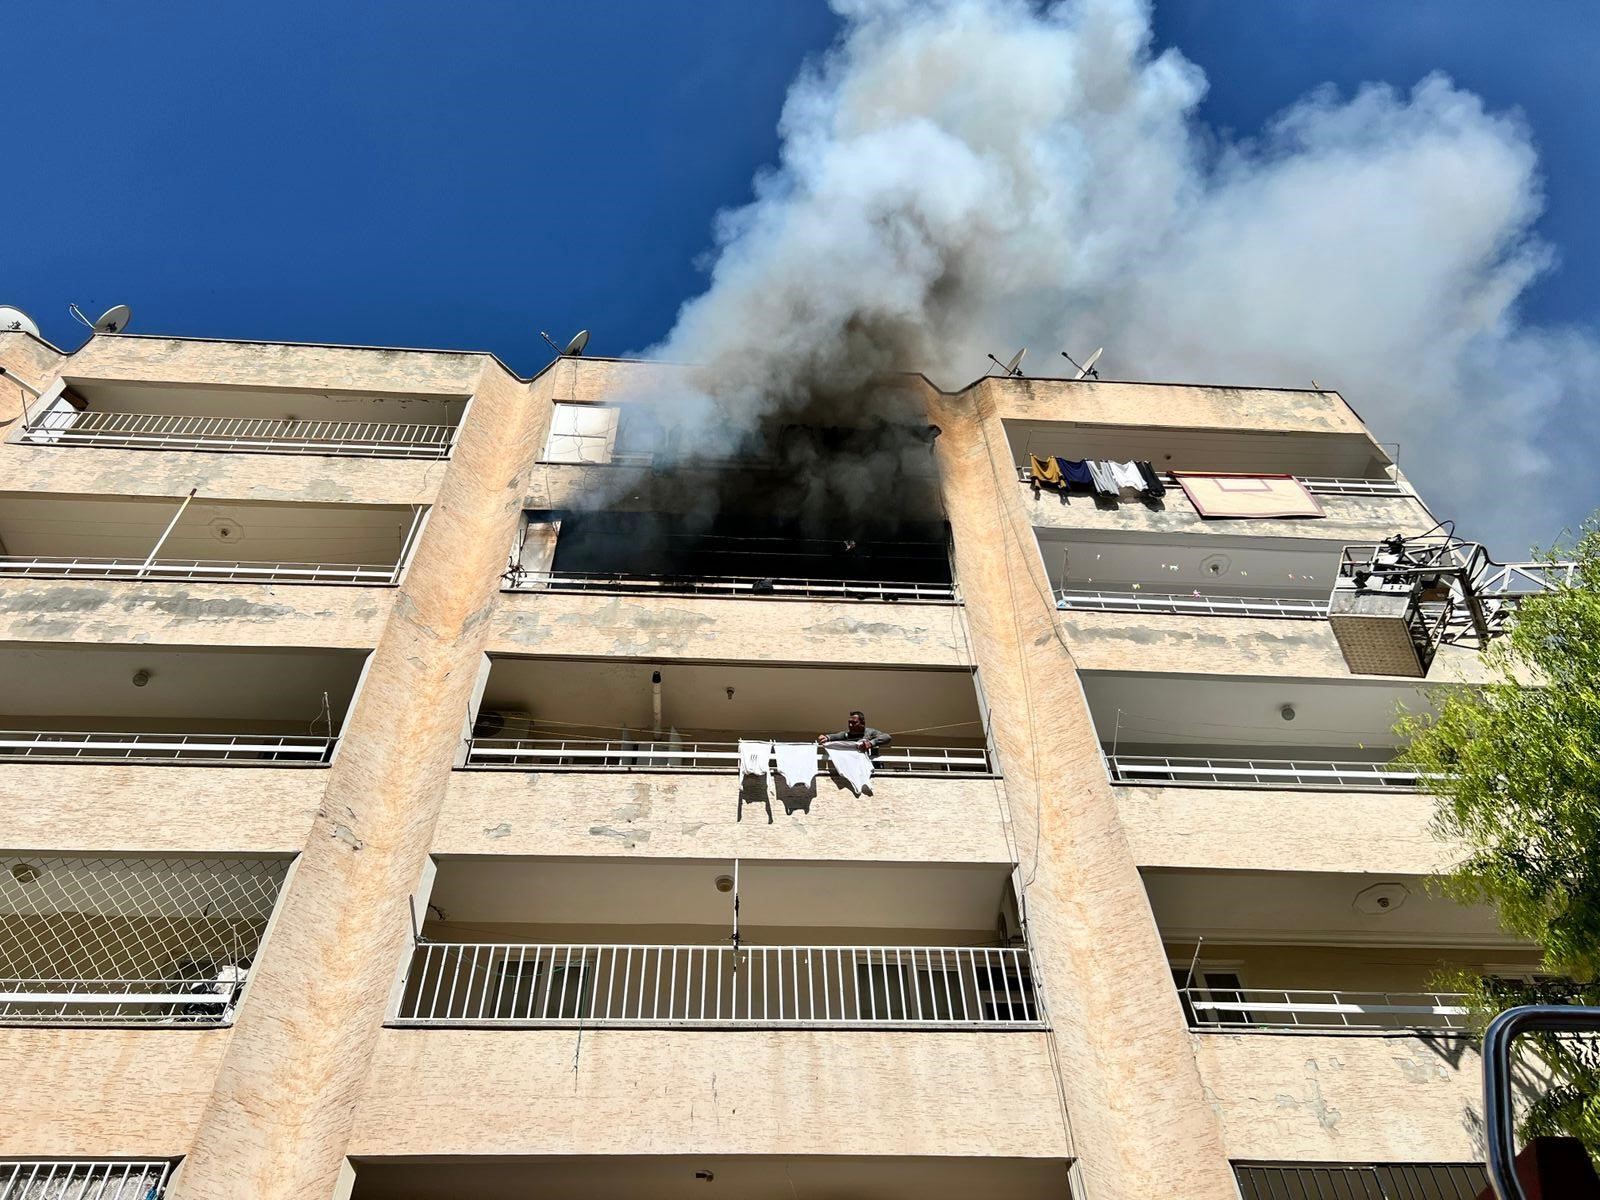 Şanlıurfa'da bir binanın 4’üncü katında yangın çıktı